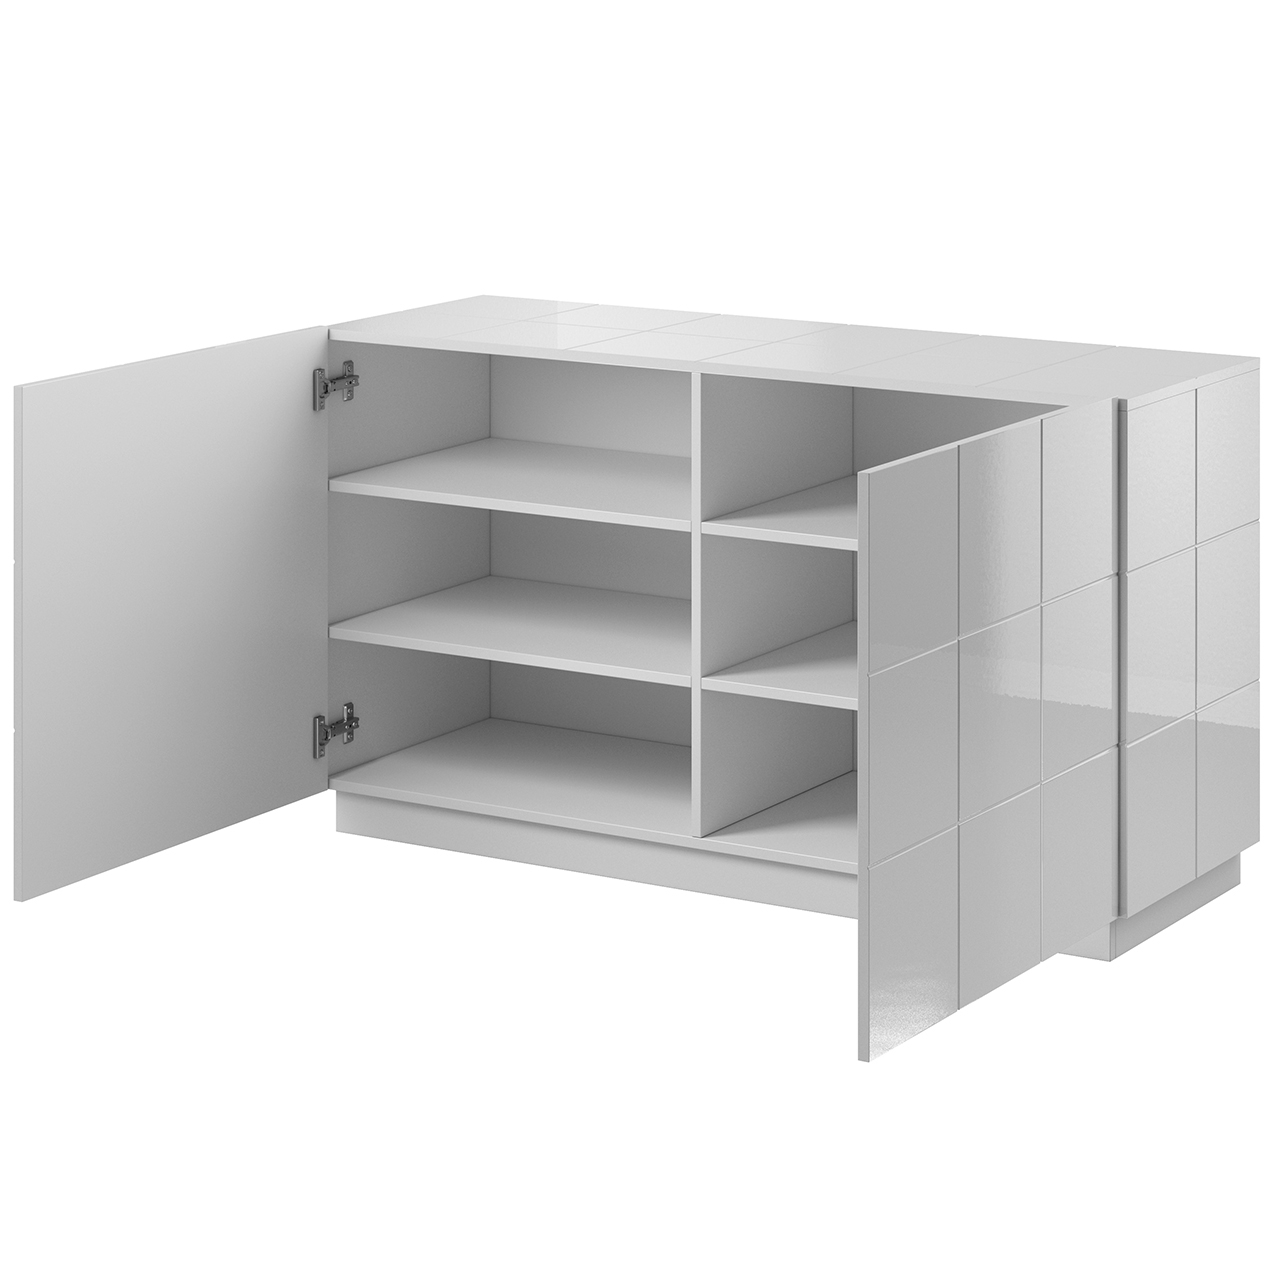 Storage cabinet REJA 2D white gloss